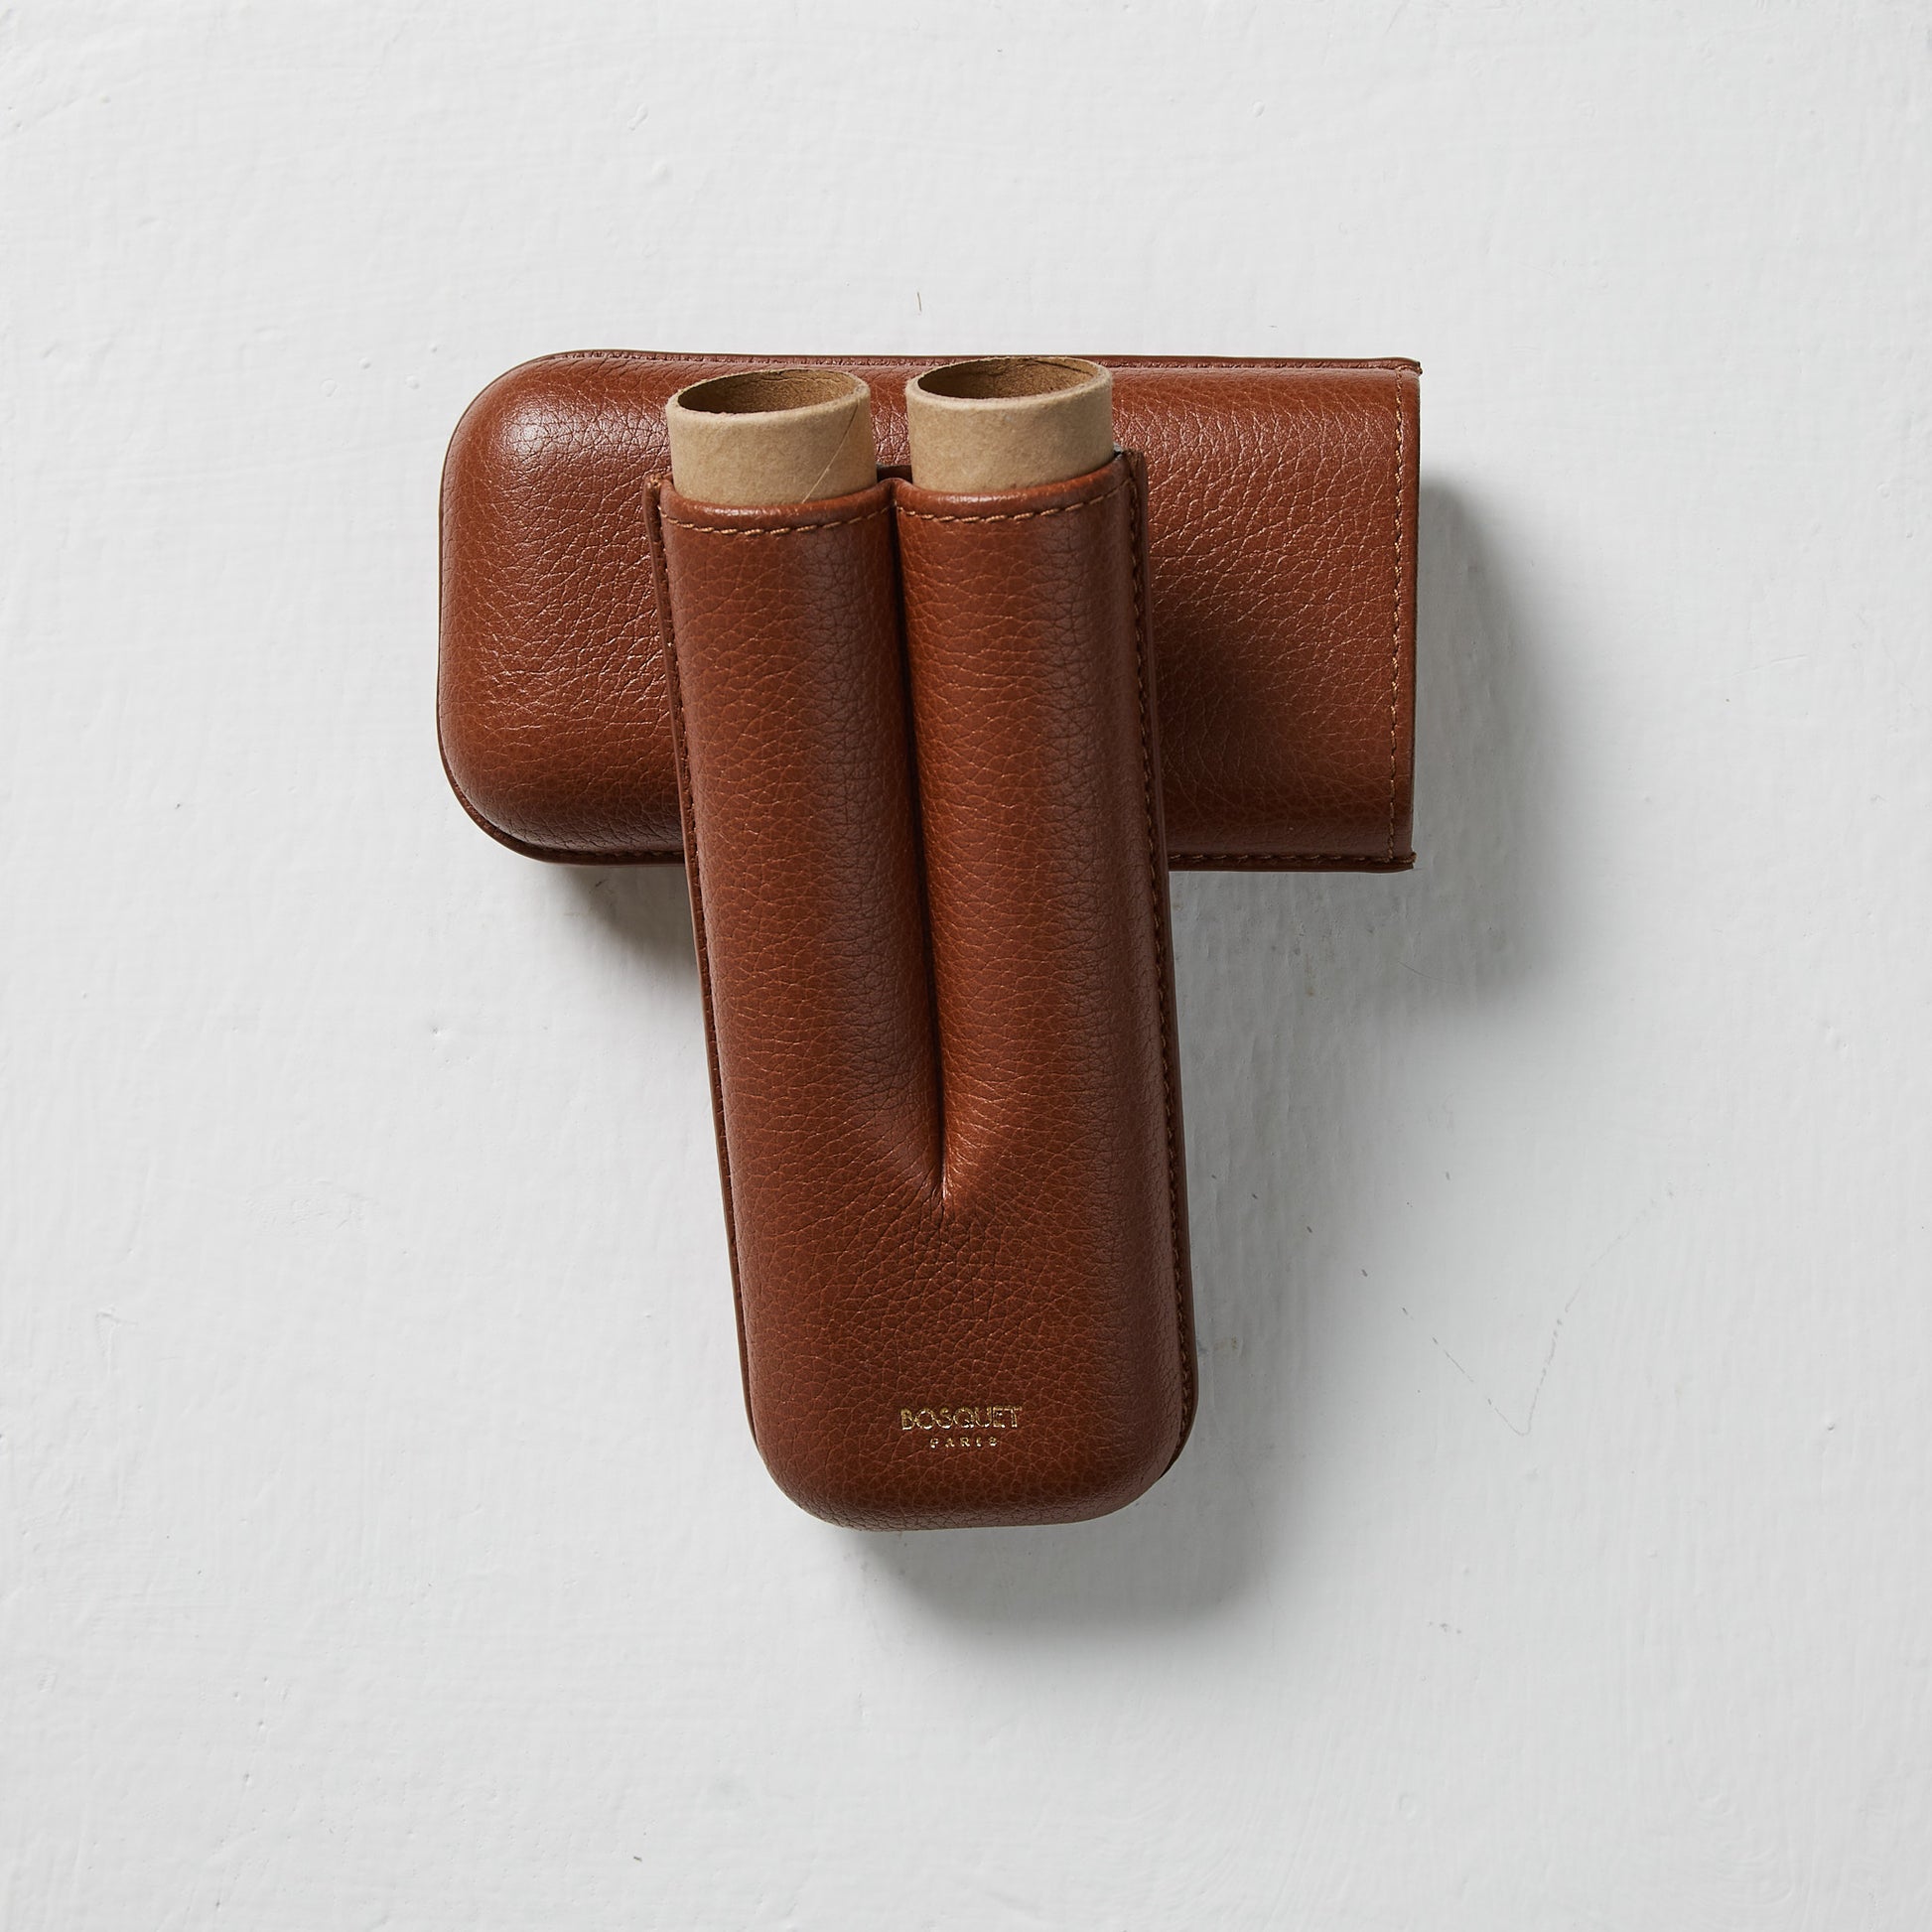 Best genuine Leather 2 Finger Cigar Case in Dark Brown